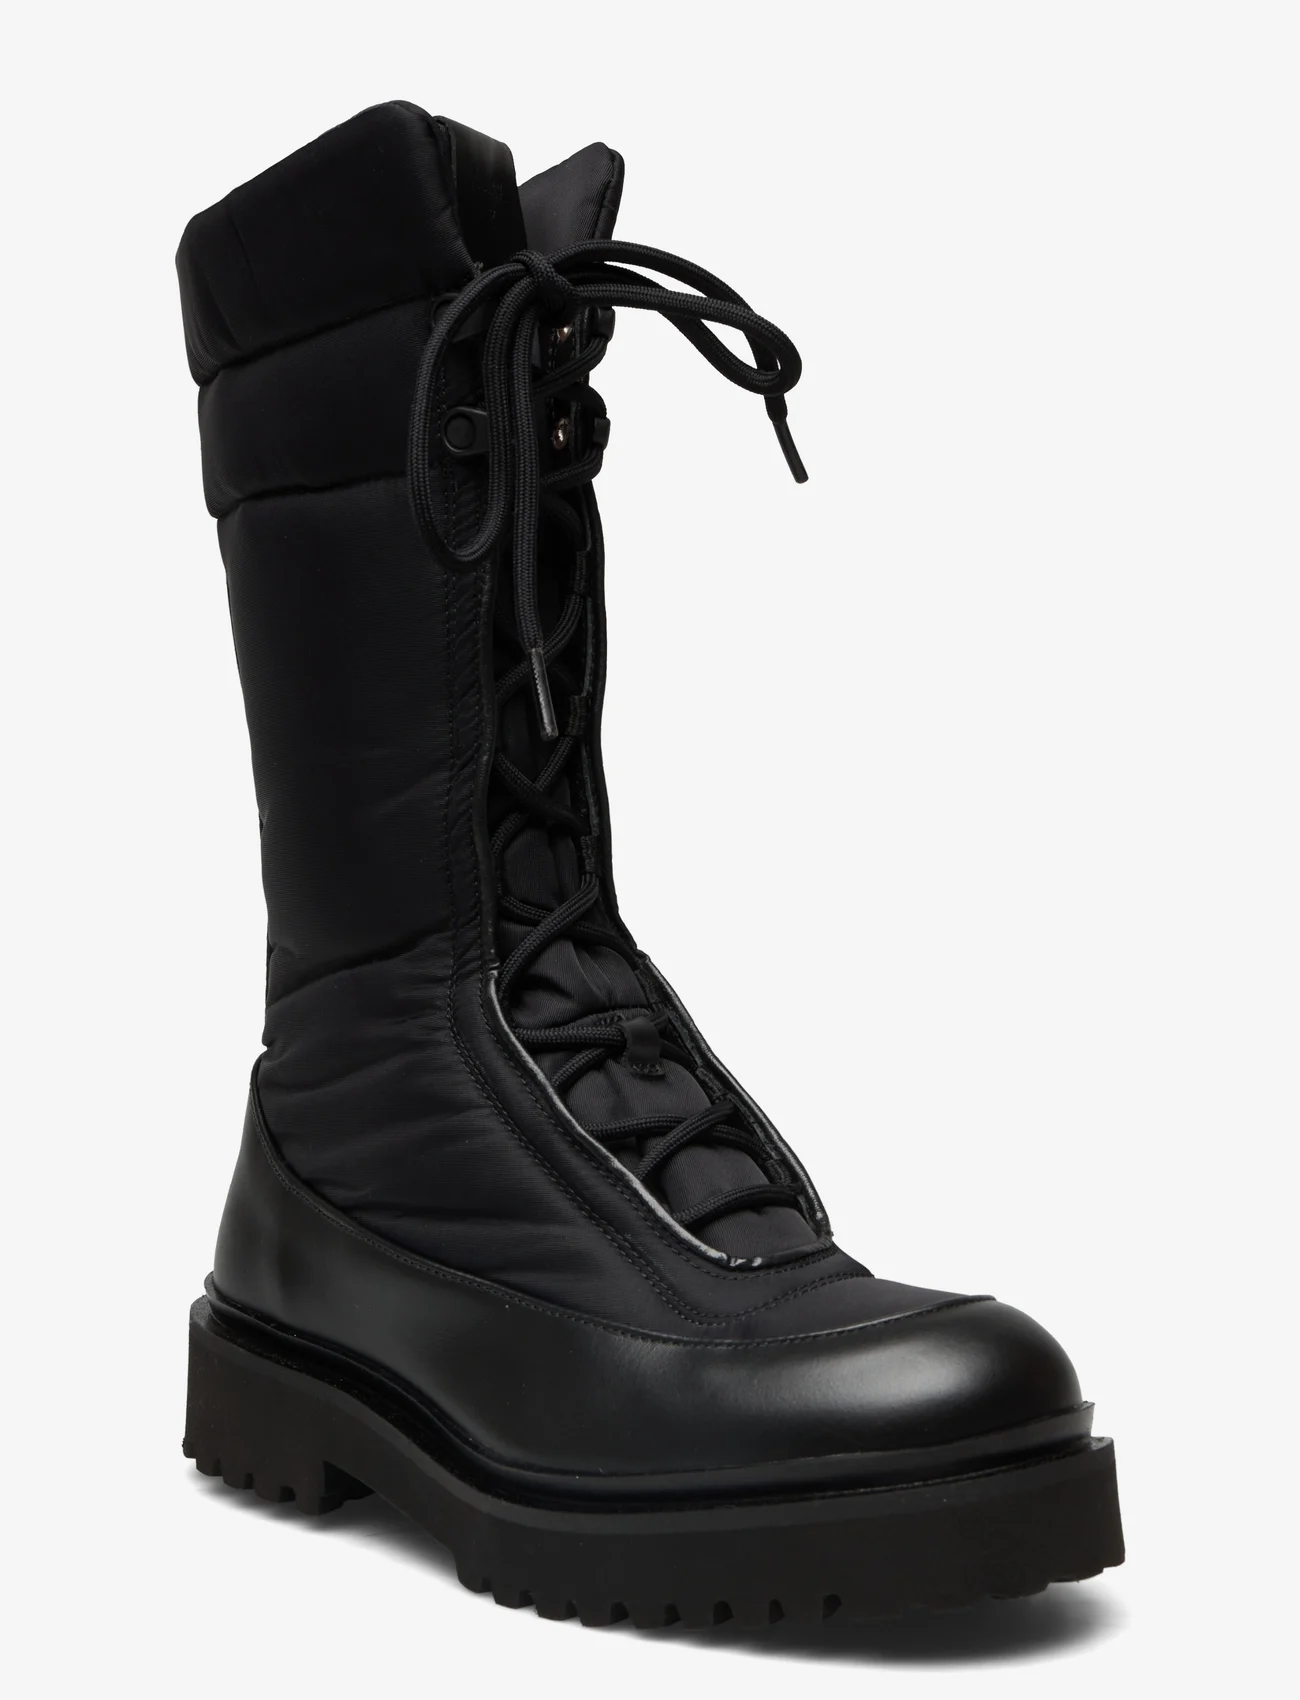 Filippa K - Lauryn Hiker Boot - knee high boots - black - 0